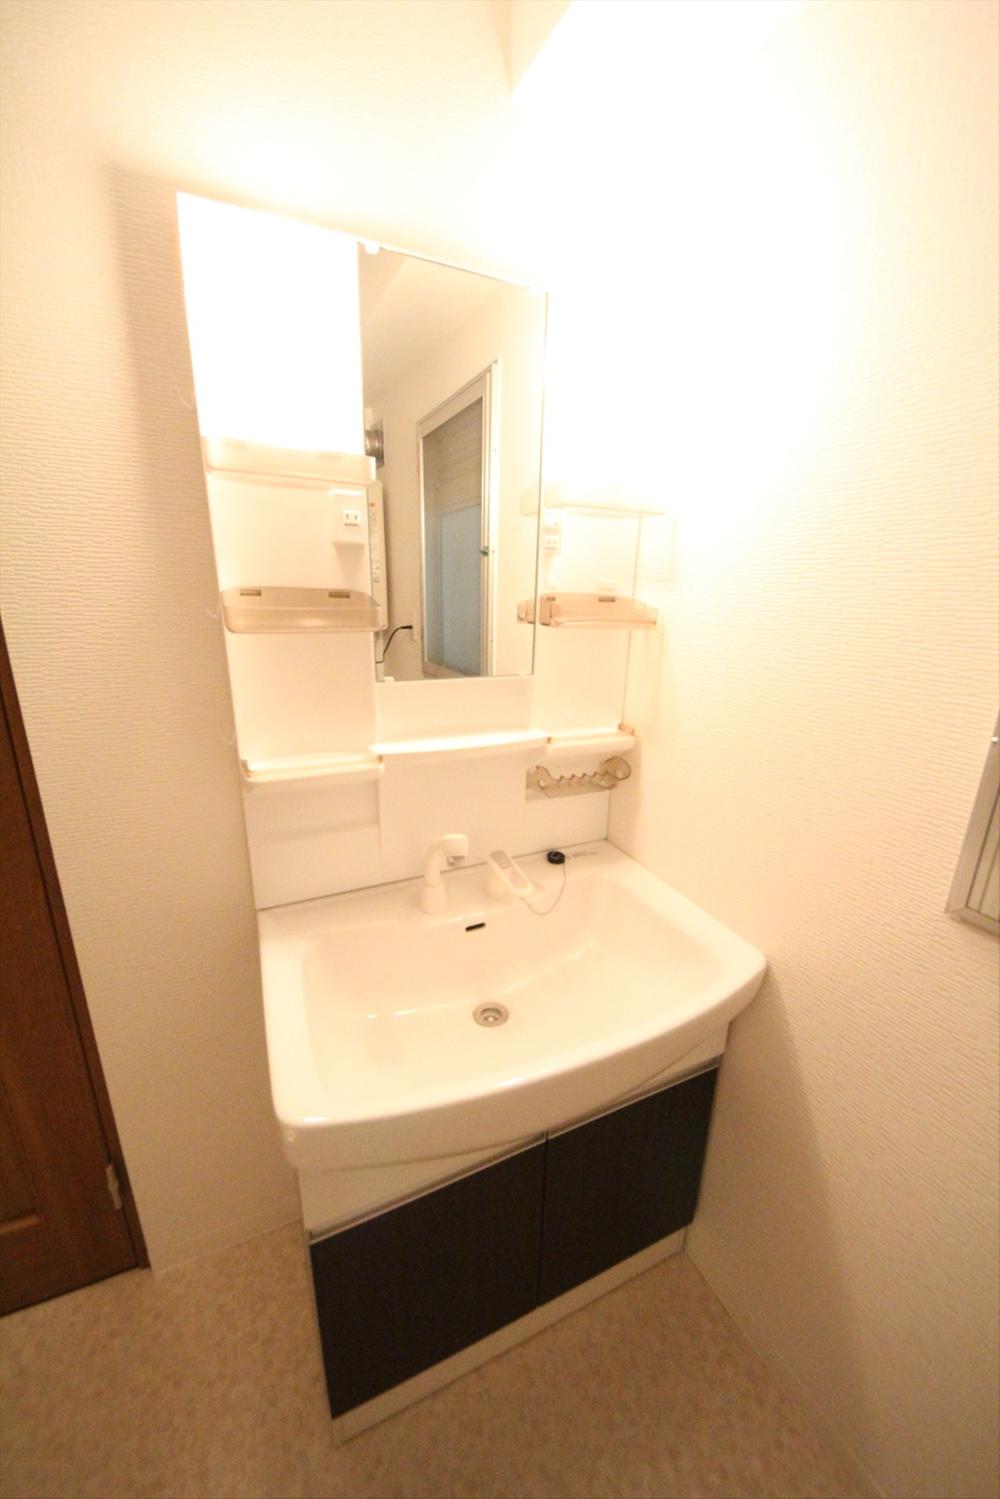 Wash basin, toilet. (November 2013) Shooting